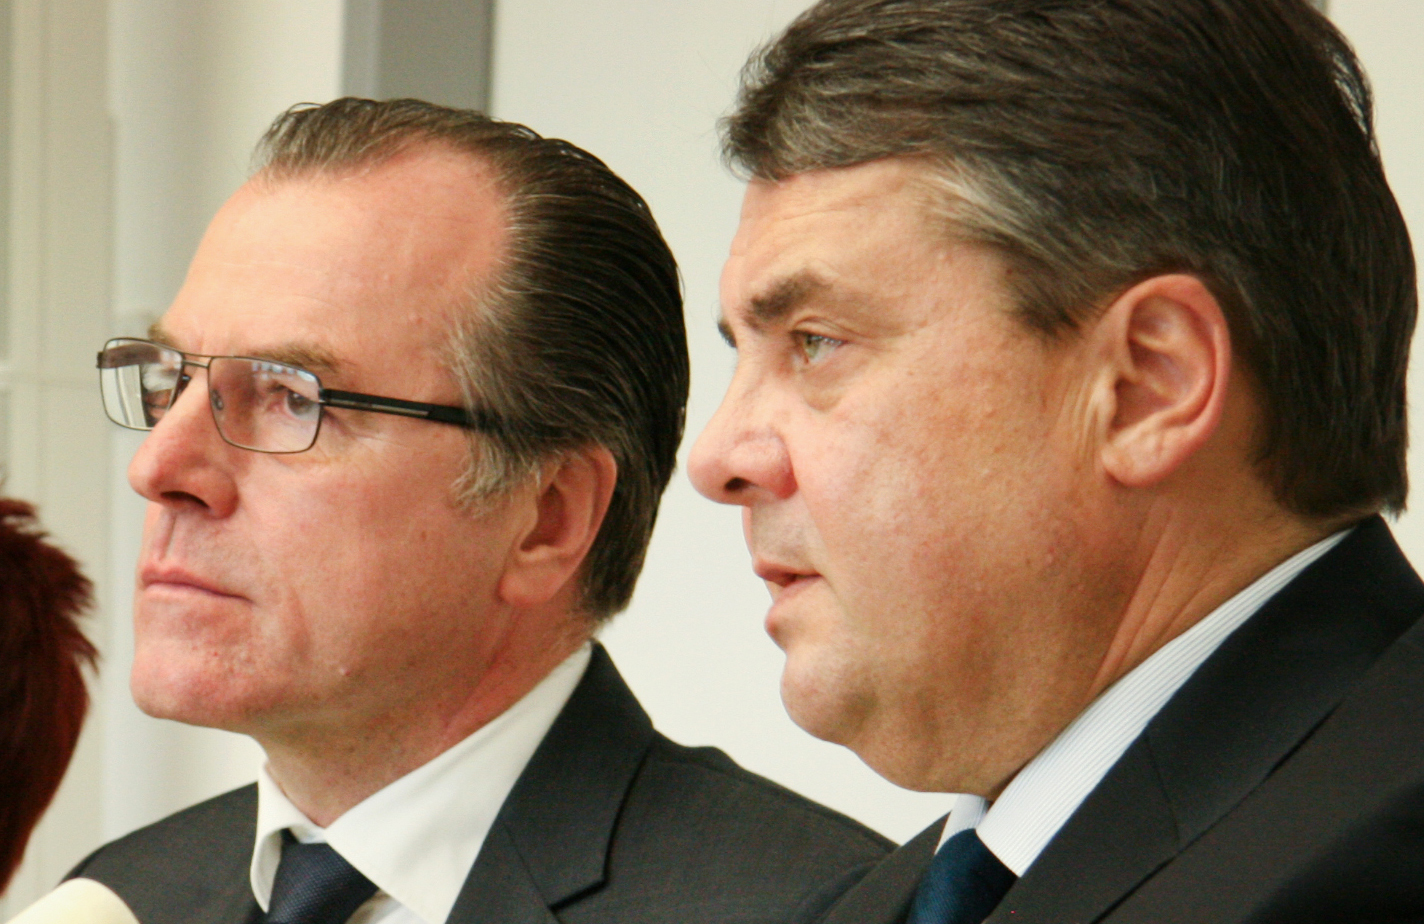 Der damalige Bundeswirtschaftsminister Sigmar Gabriel (SPD) (r.) und der Fleischfabrikant Clemens Tönnies (l.) (Archivbild) Foto: picture alliance/---/dpa